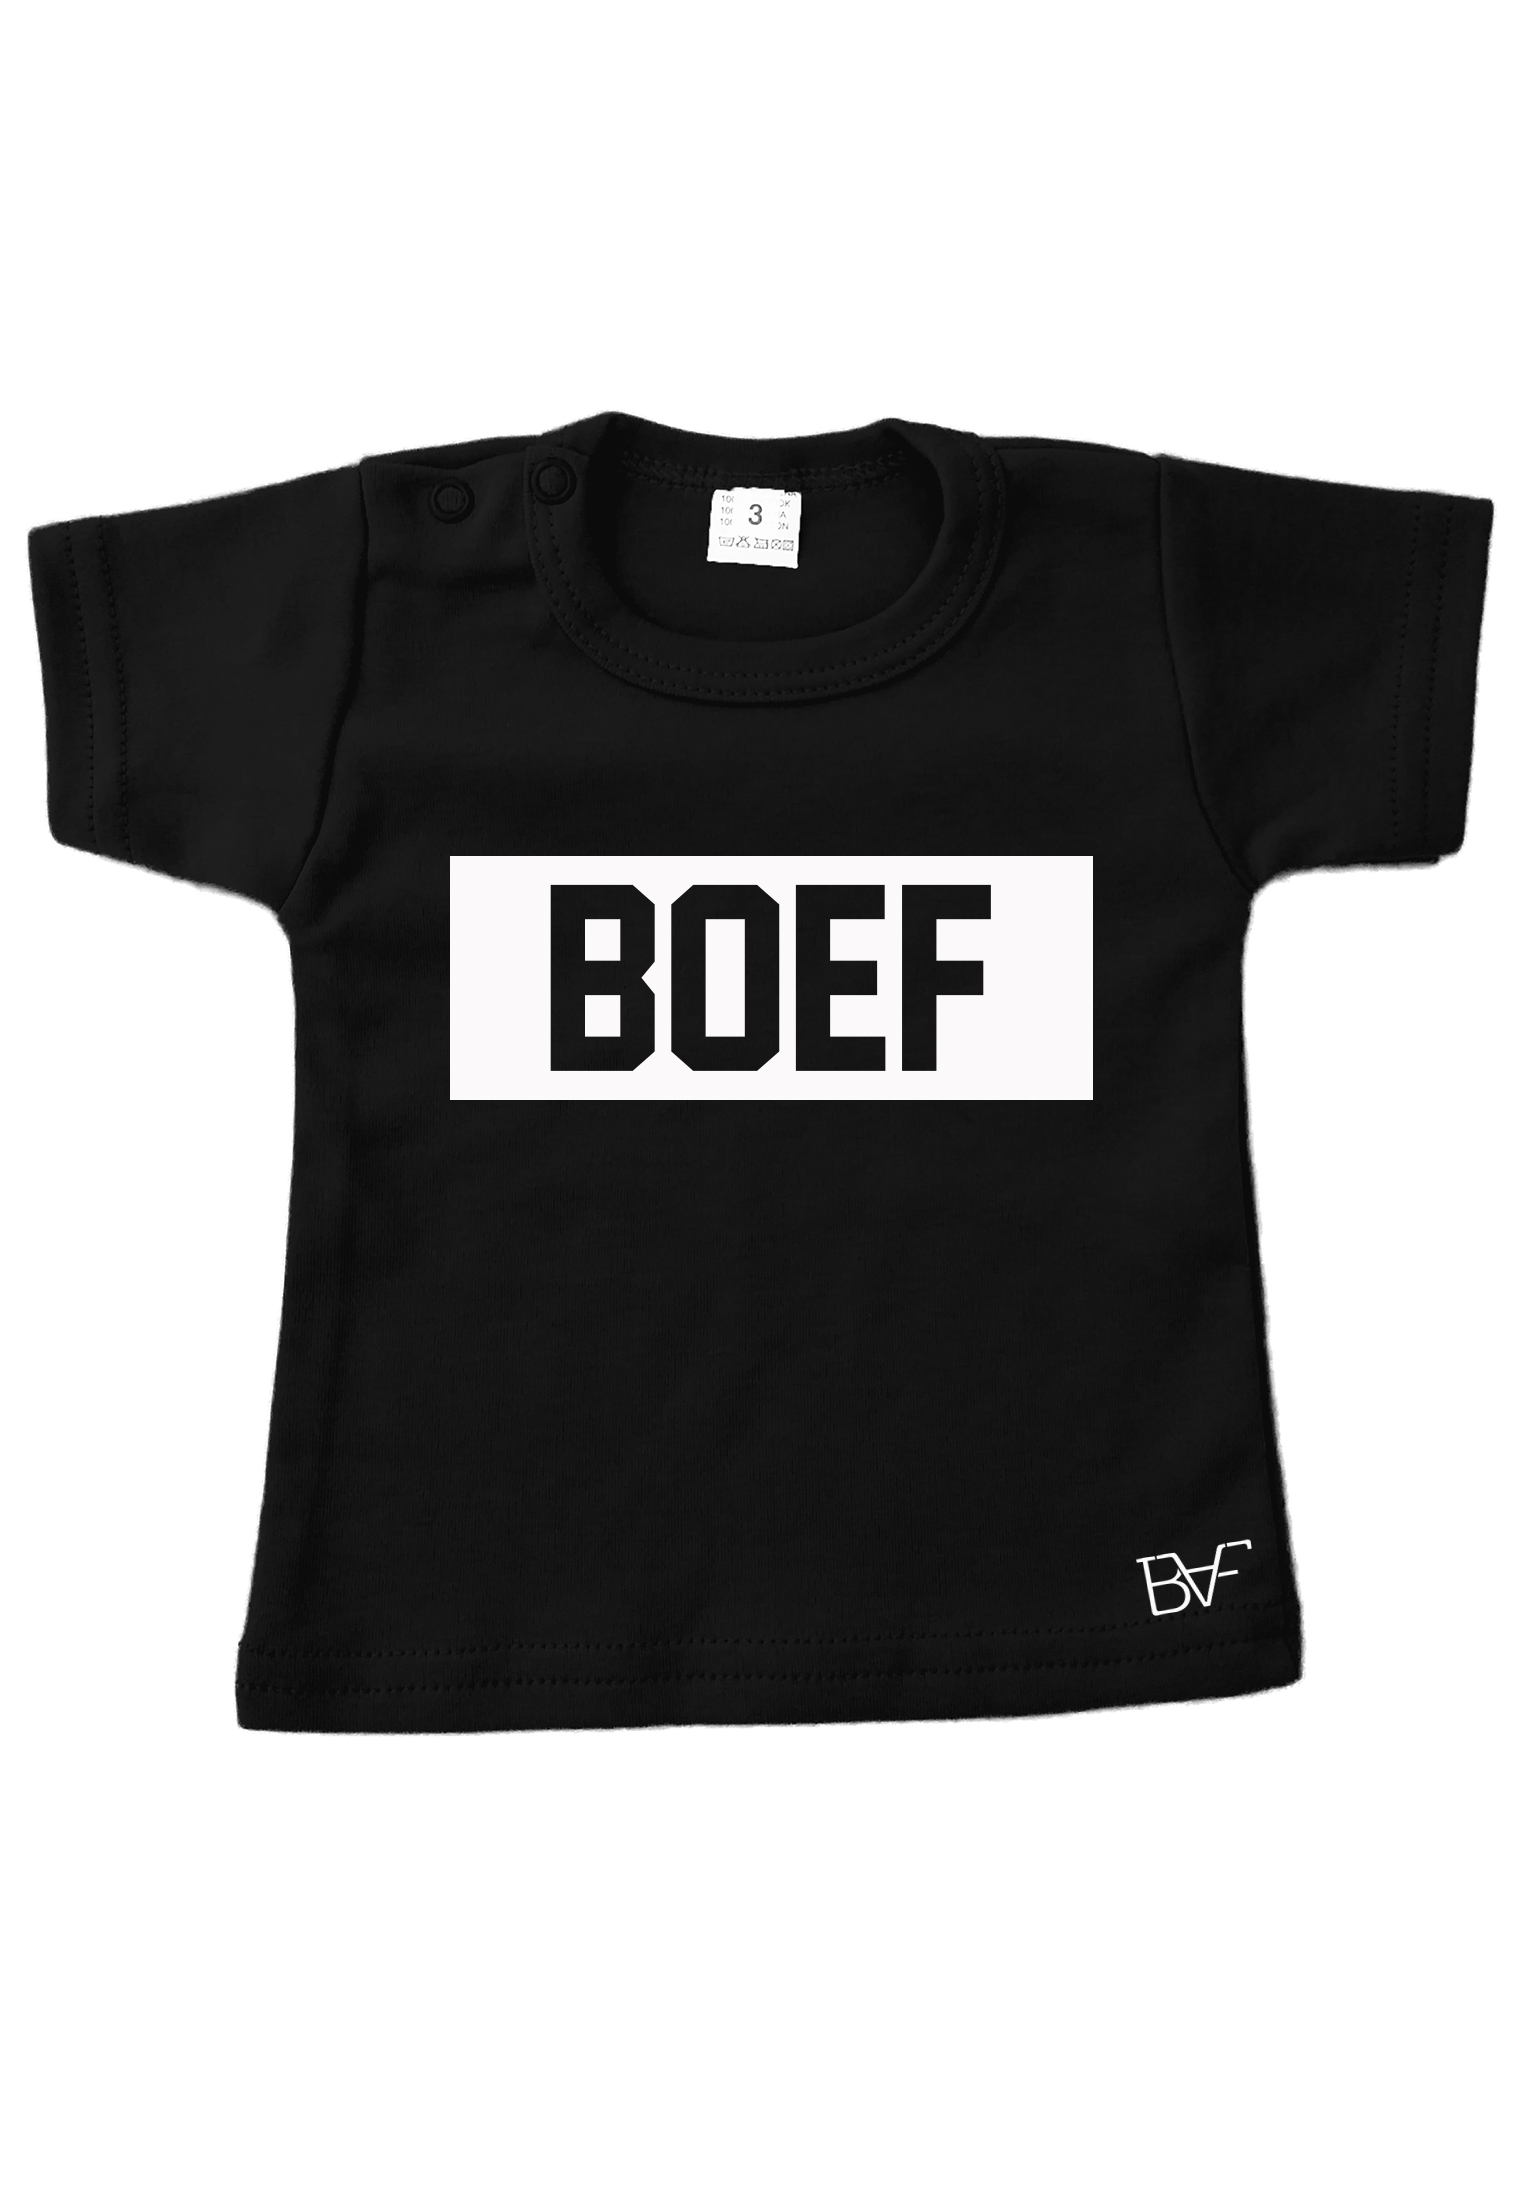 T-shirt boef - Fashion